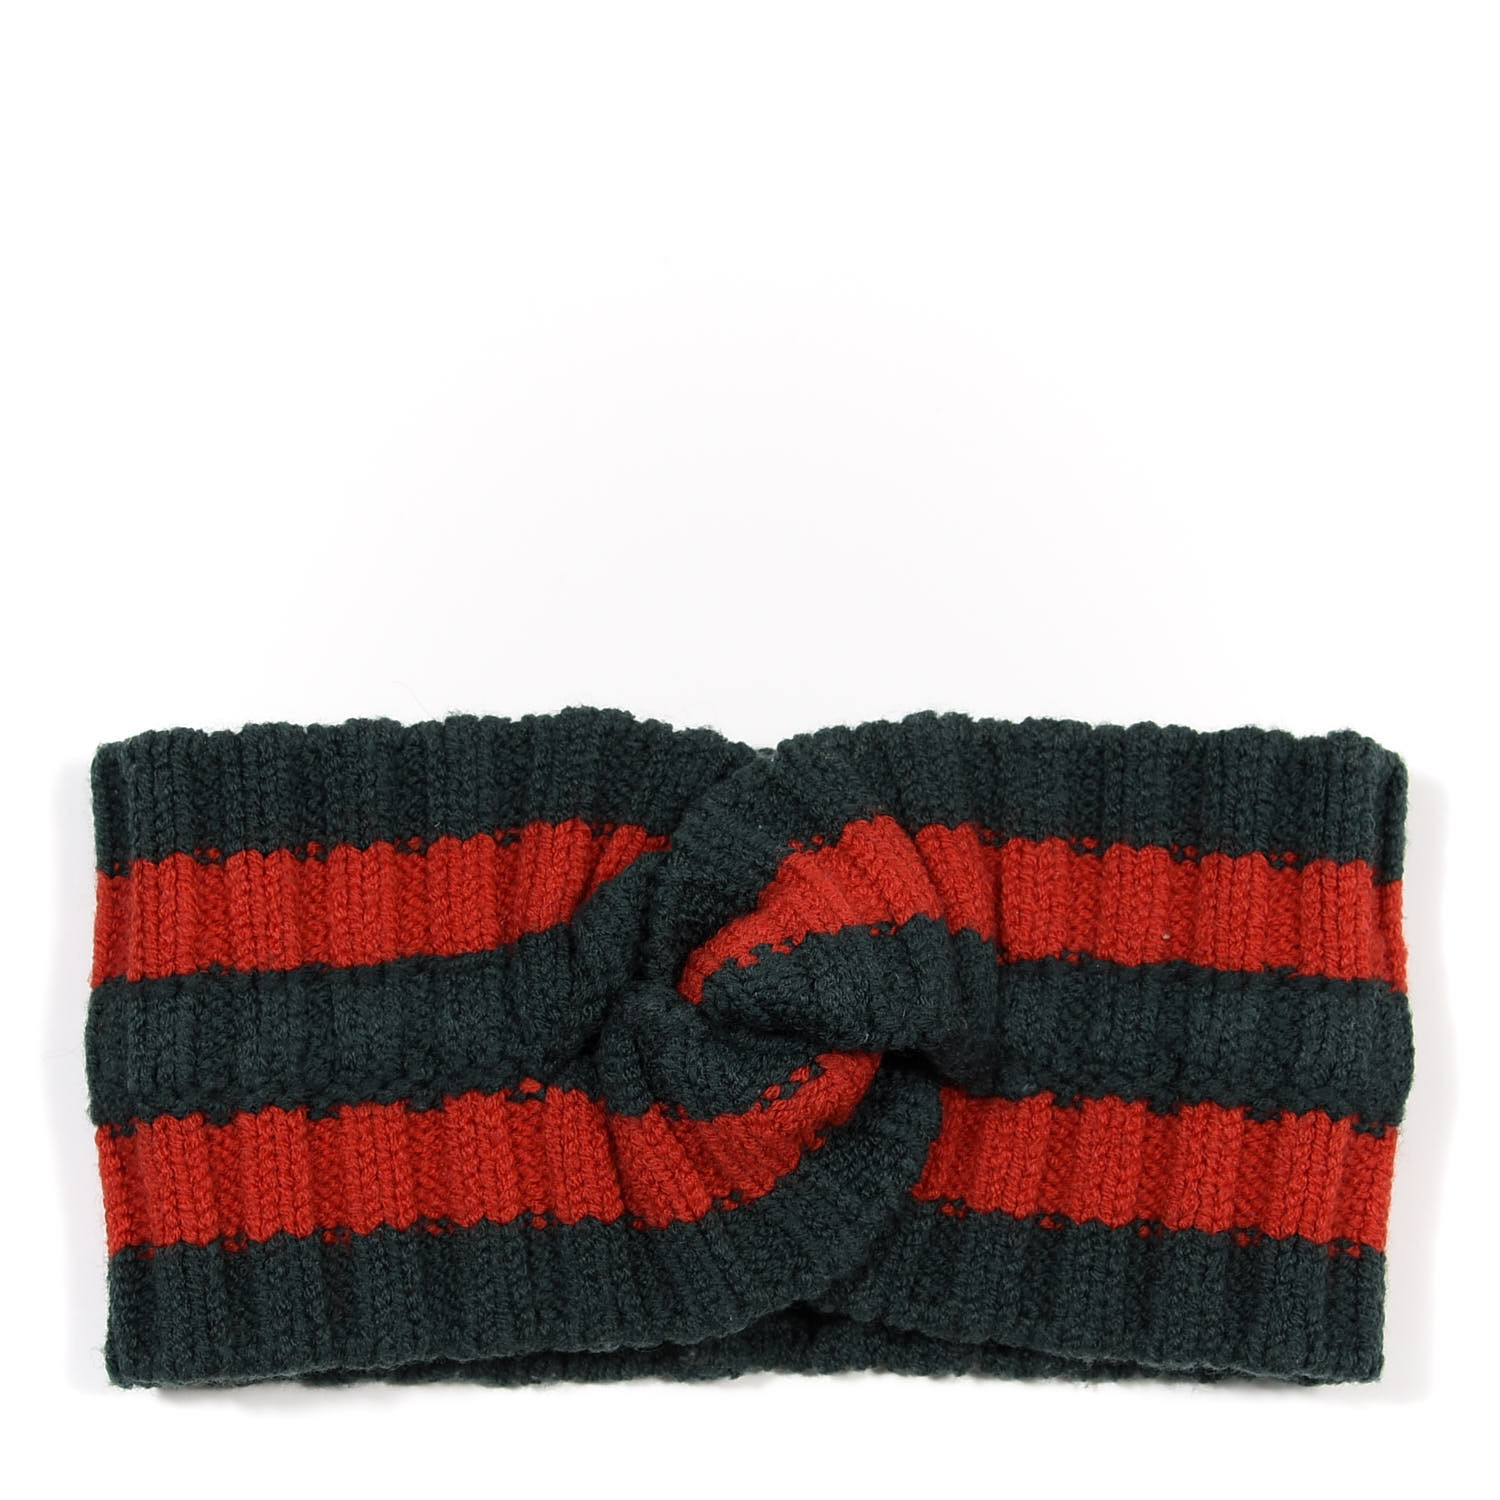 wool web headband